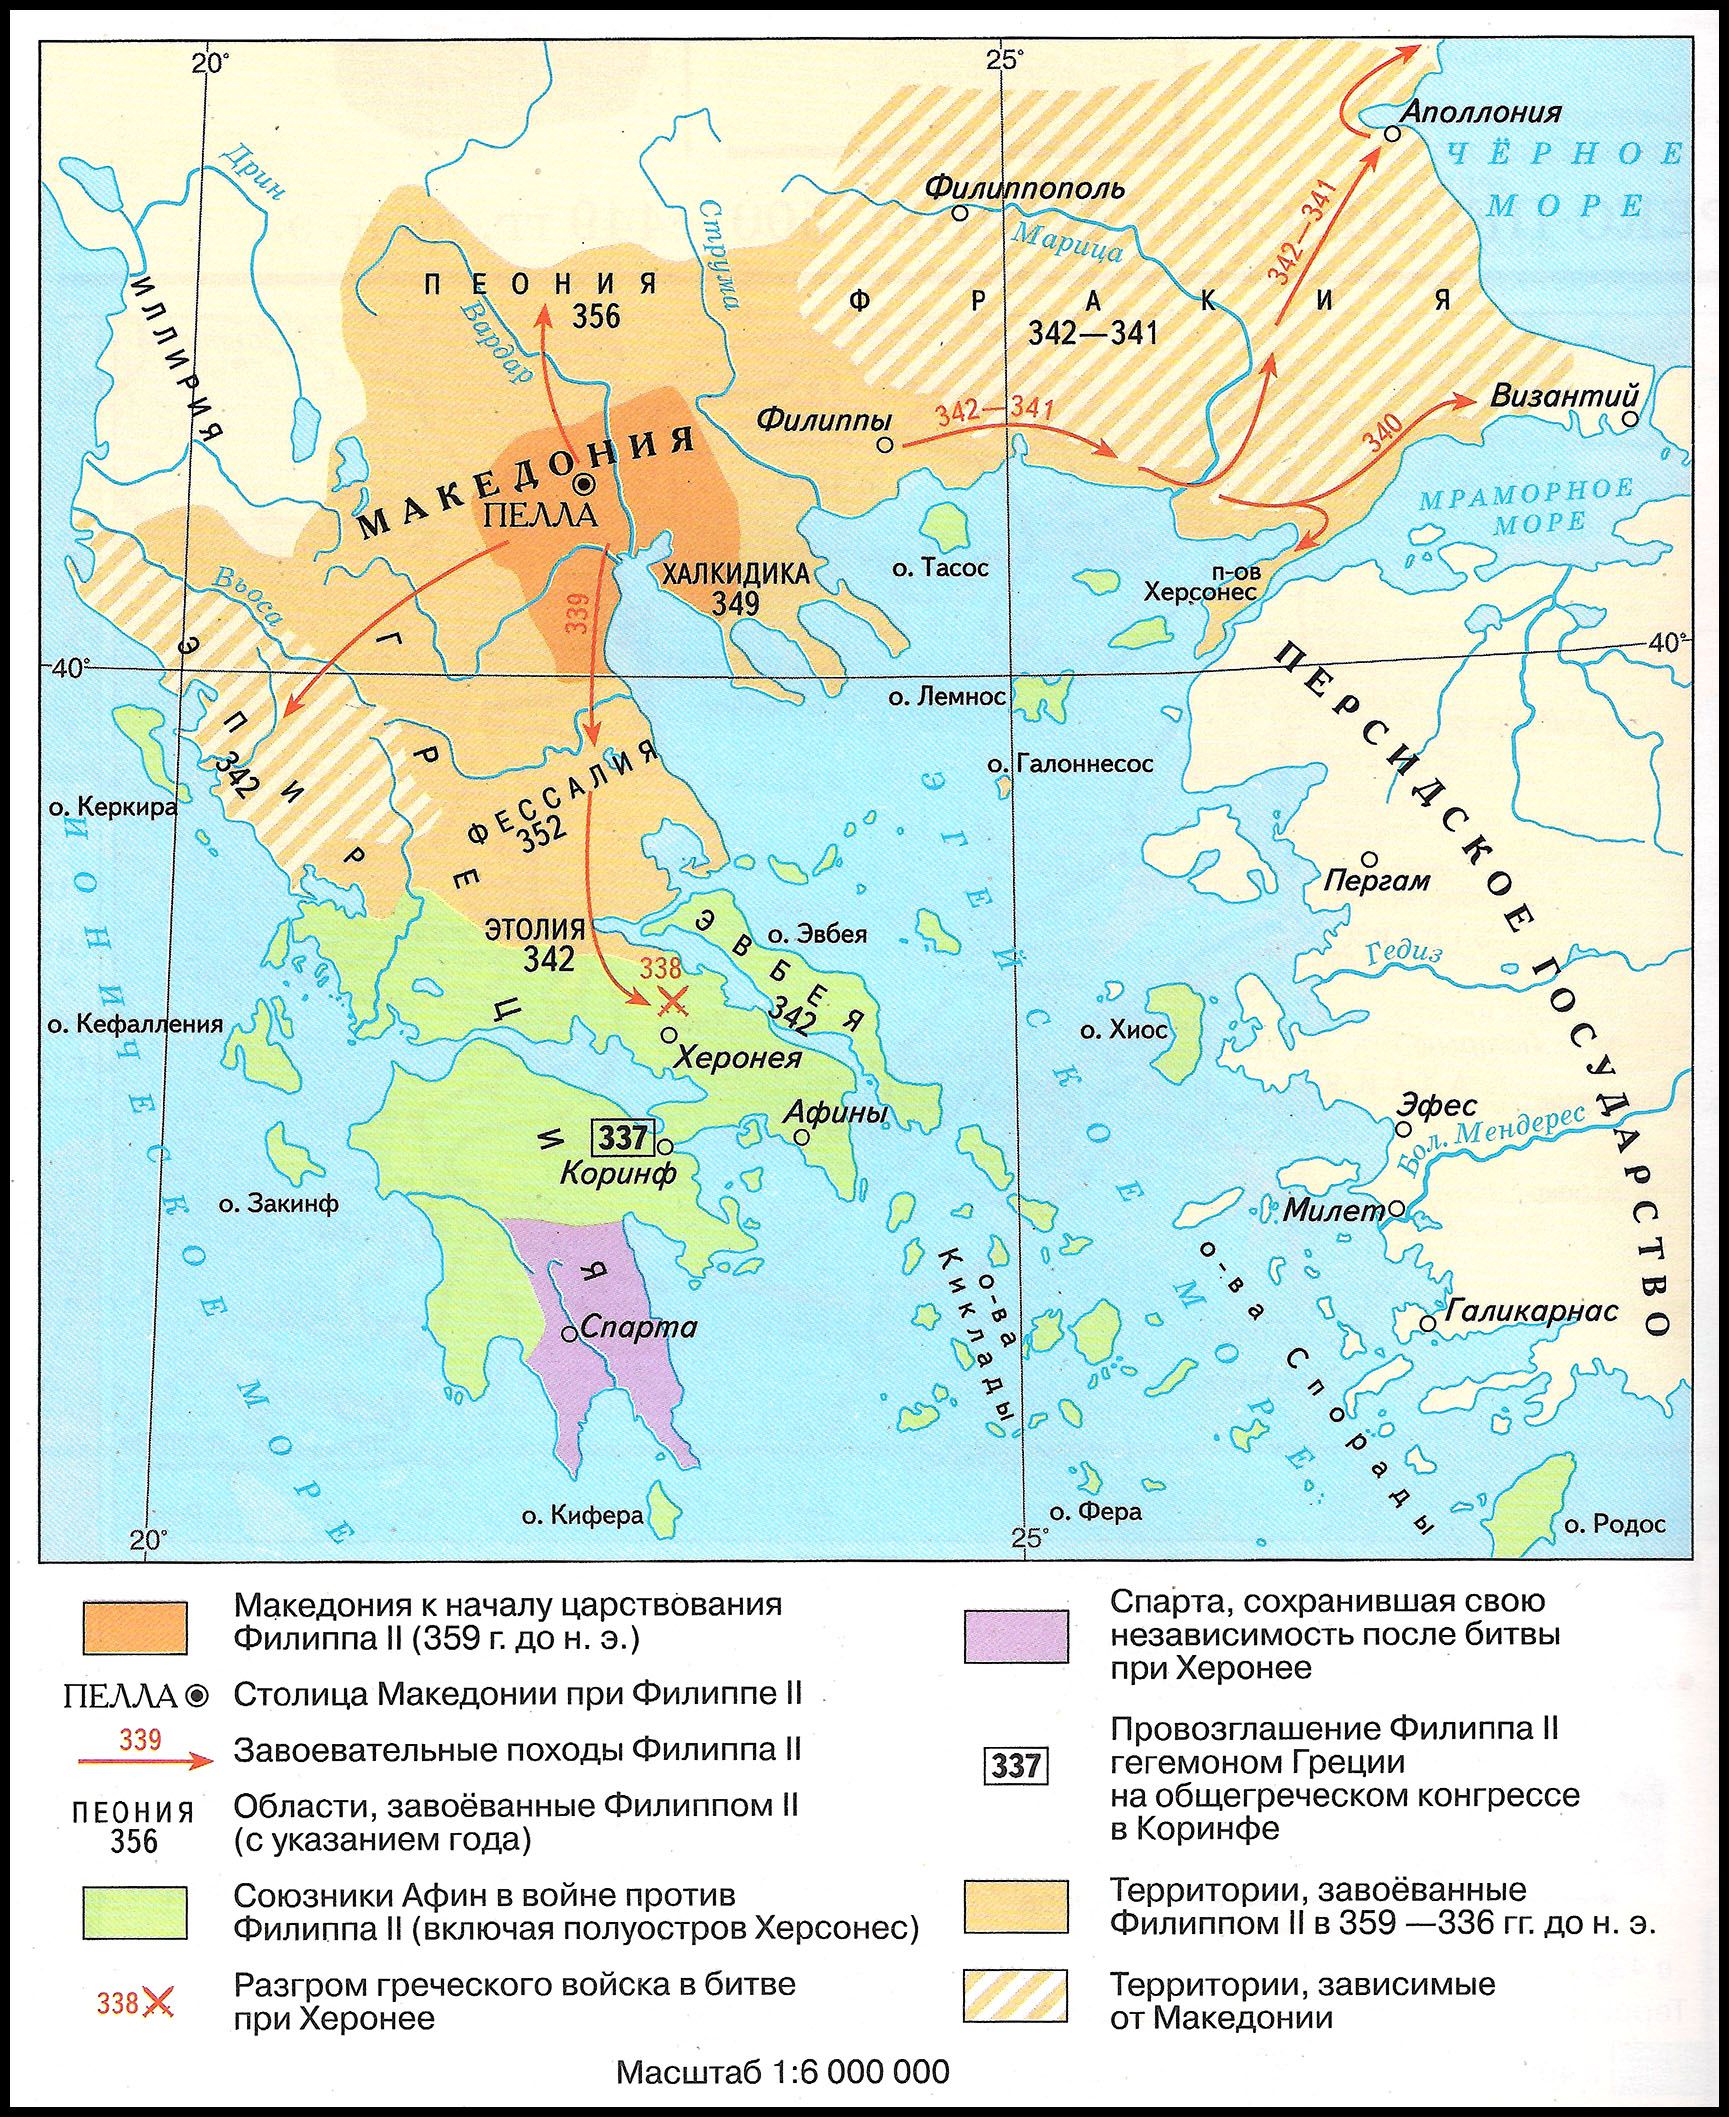 Возвышение Македонии, 359-336 гг. до н.э.